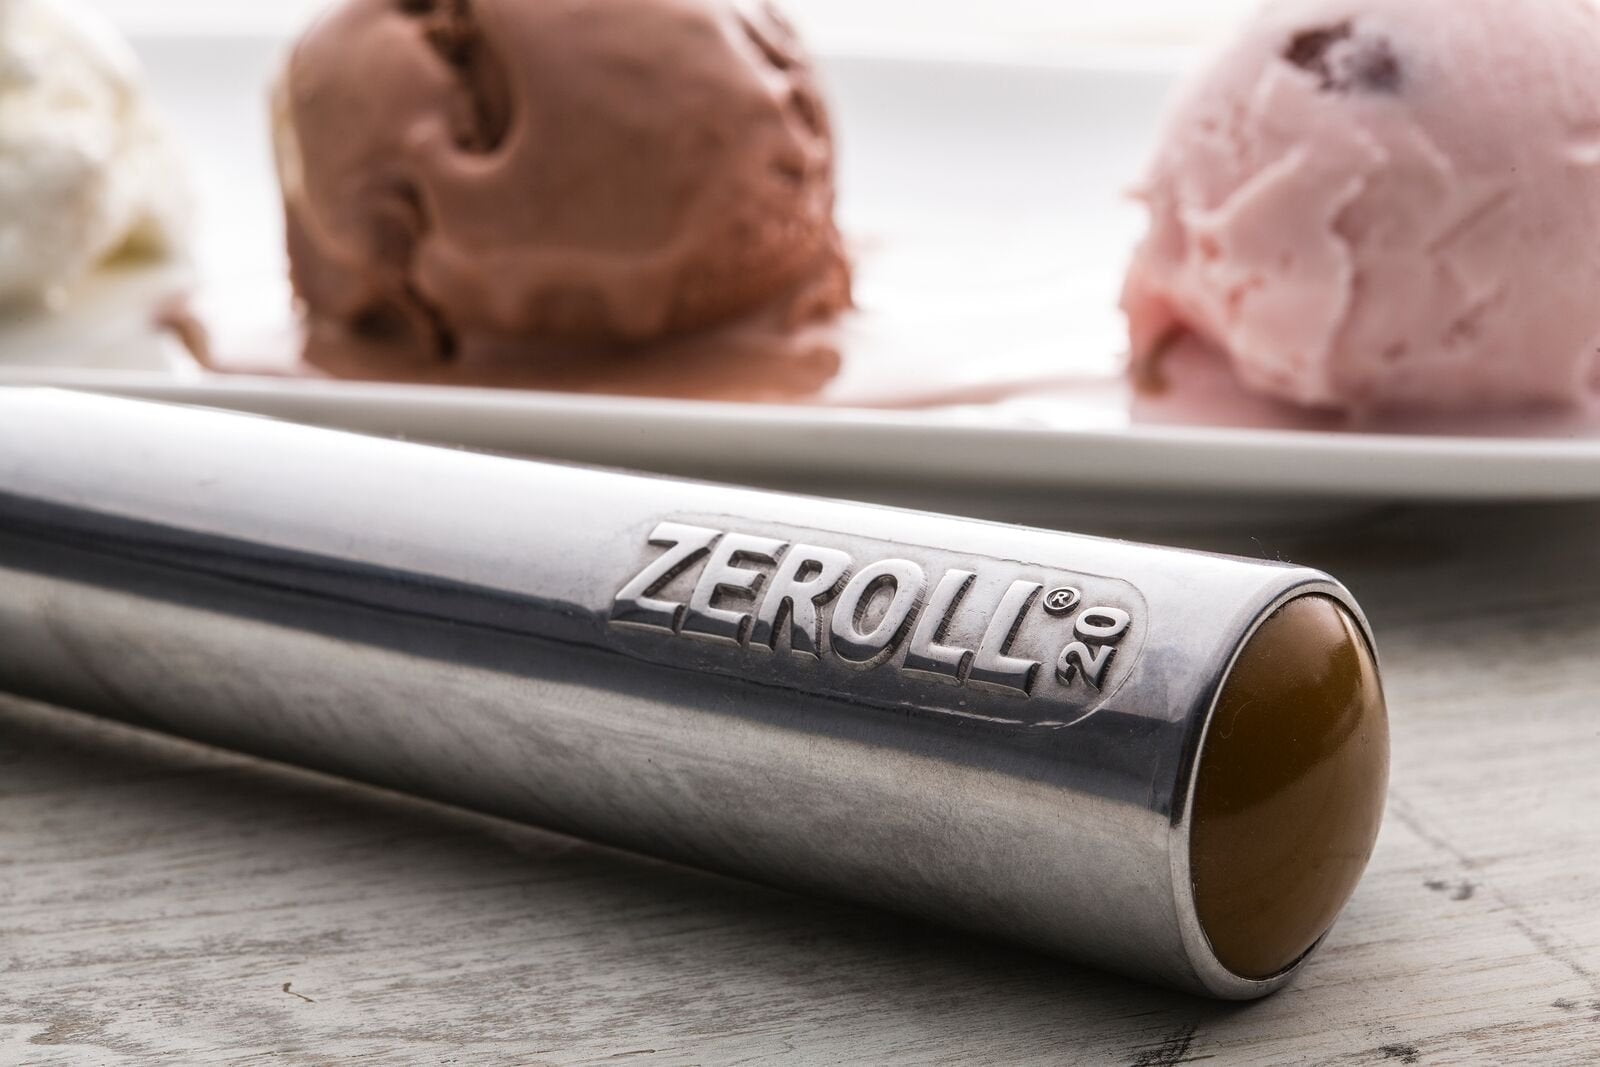 Zeroll® Original Ice Cream Scoop